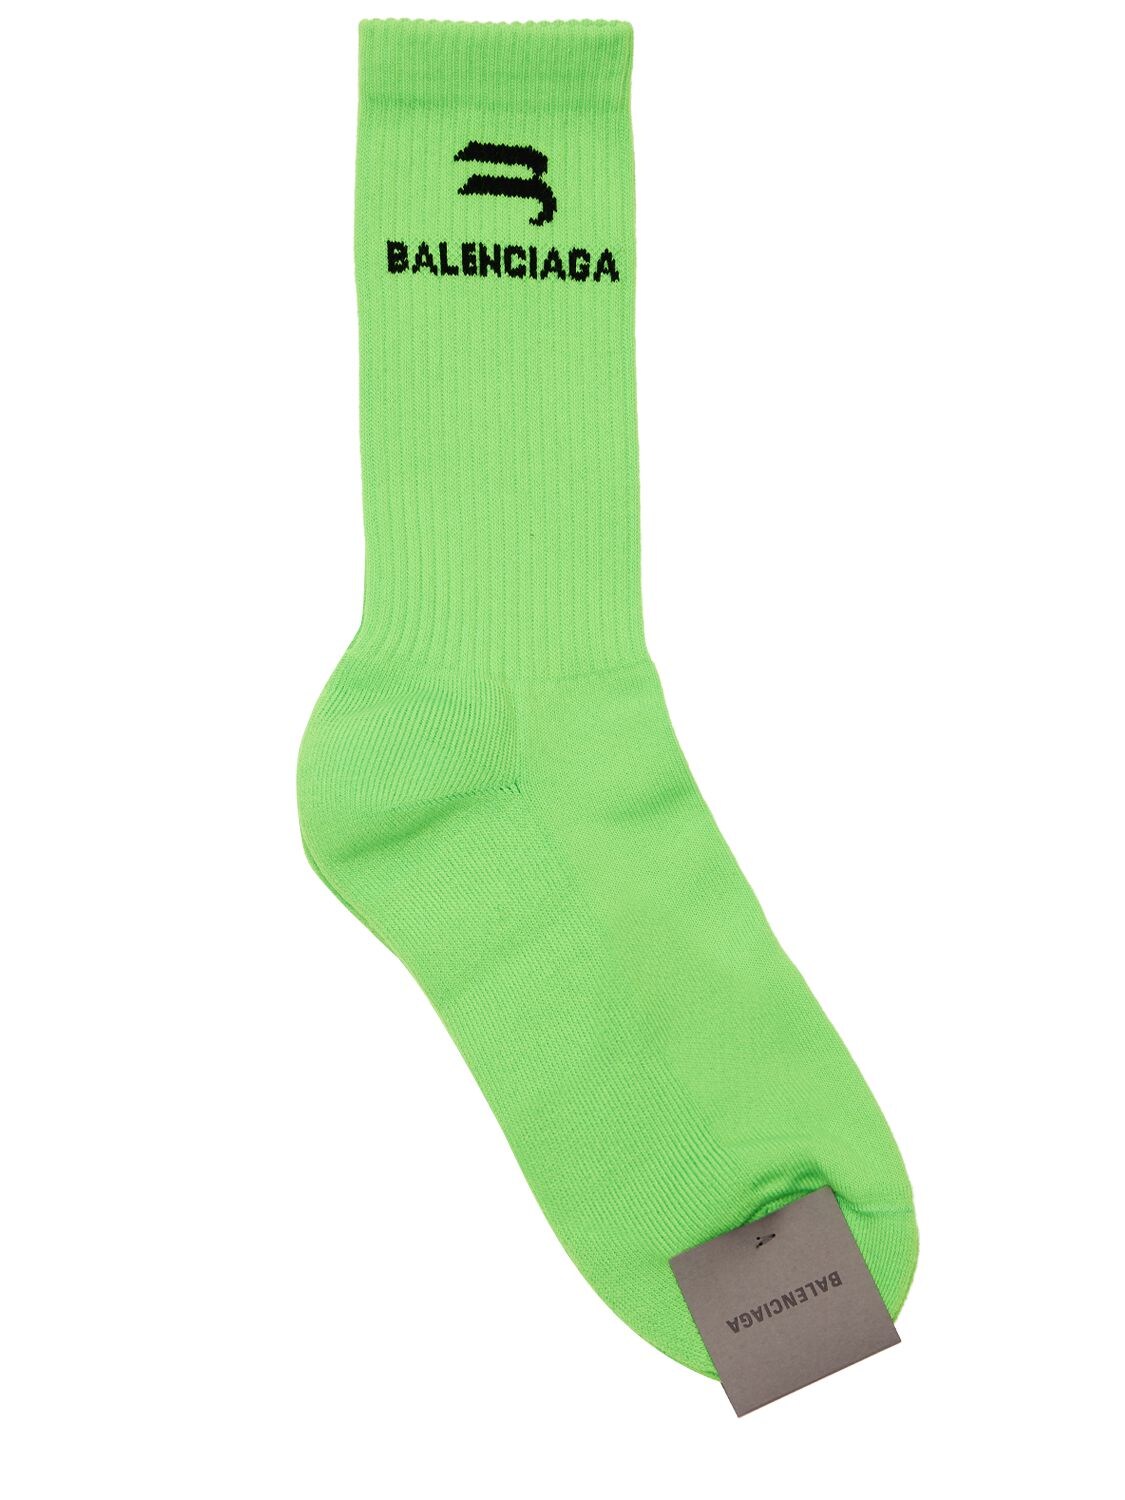 Balenciaga - Logo socks - Grass Green | Luisaviaroma